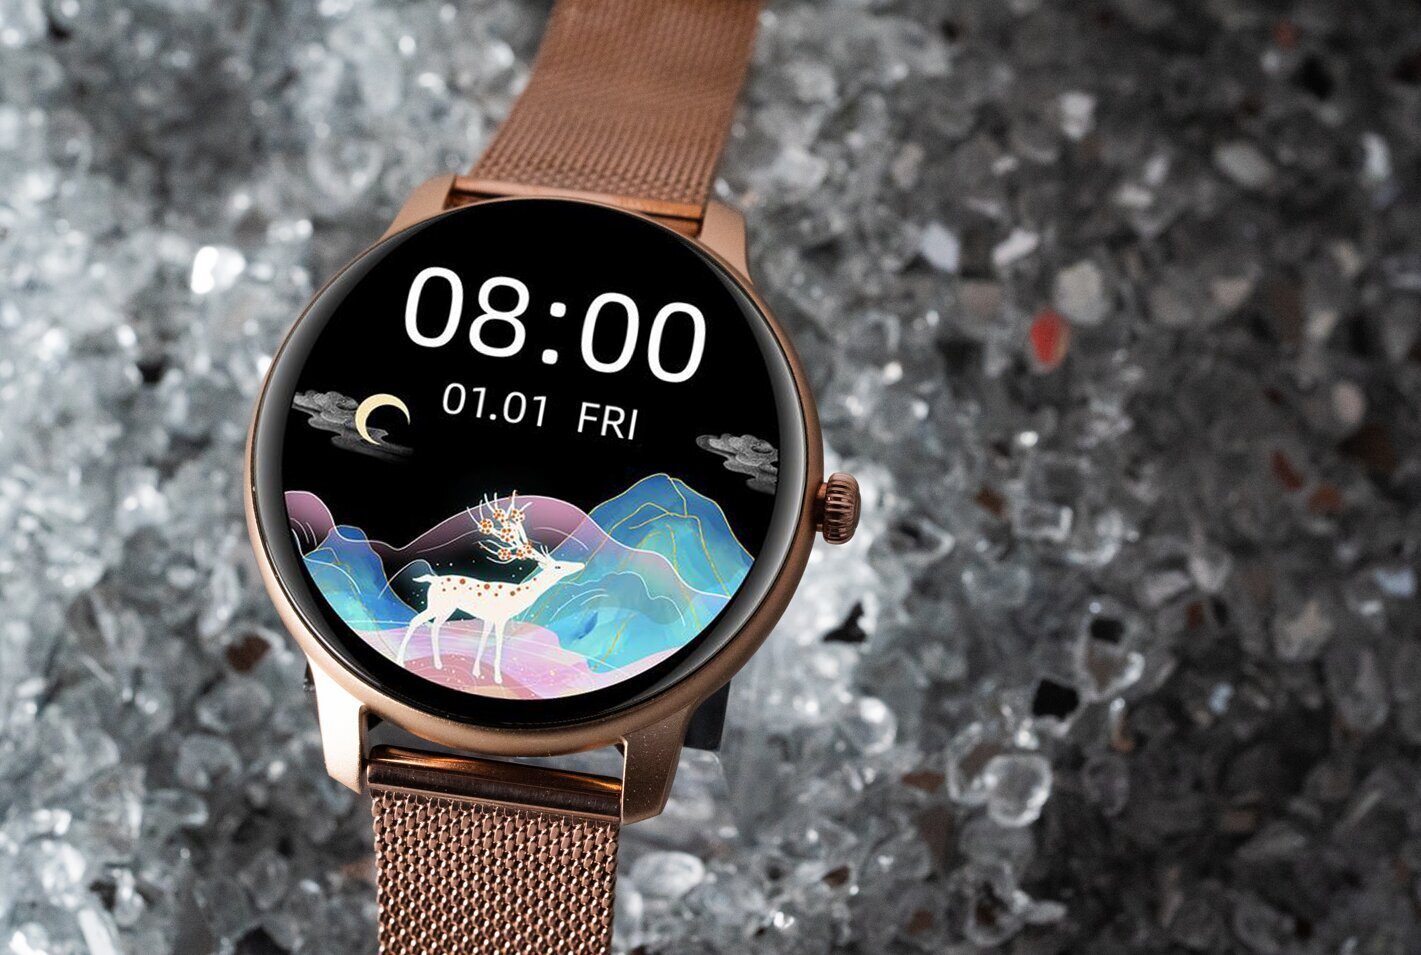 Oromed Oro Lady Gold Next kaina ir informacija | Išmanieji laikrodžiai (smartwatch) | pigu.lt